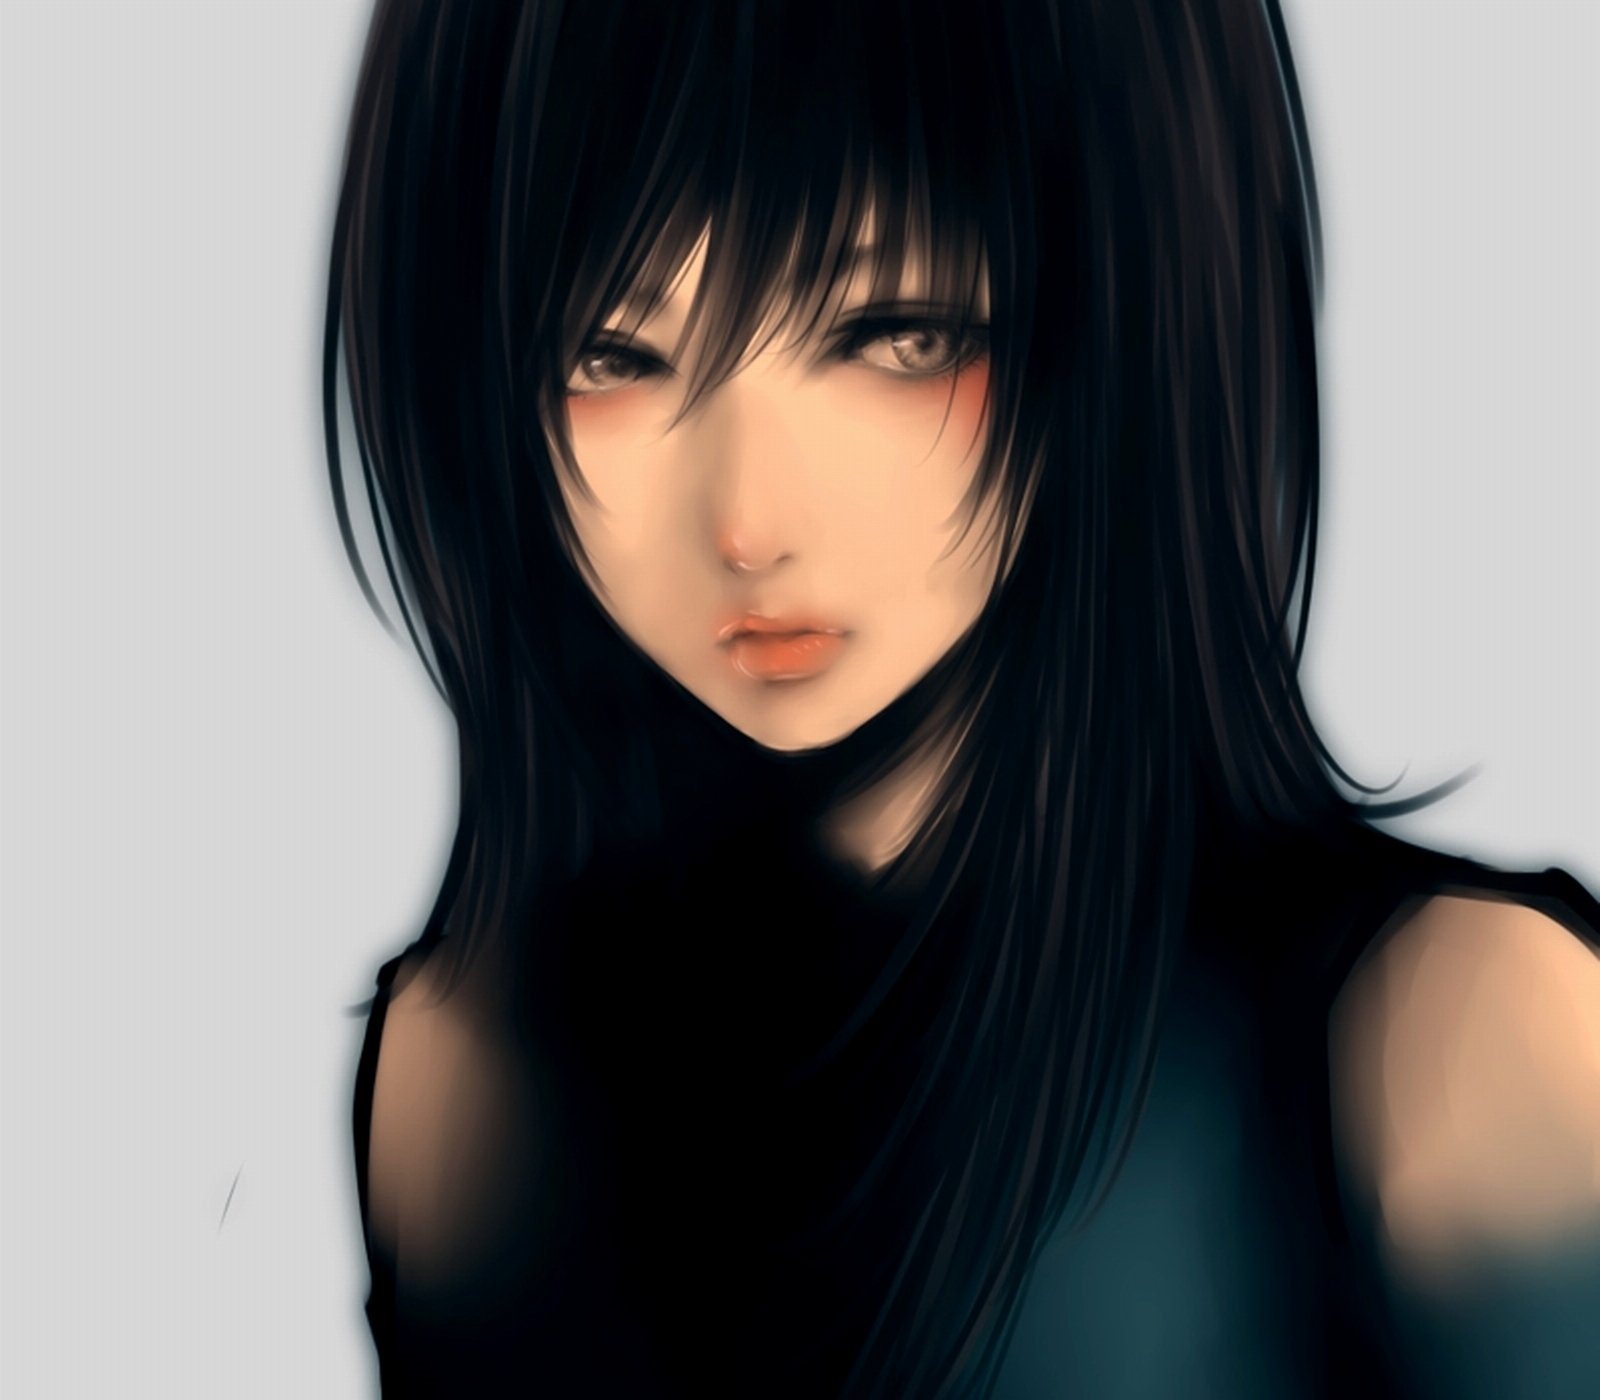 Black hair skins. Черноволосая девушка. Девушка с чёрными волосами и голубыми глазами арт.